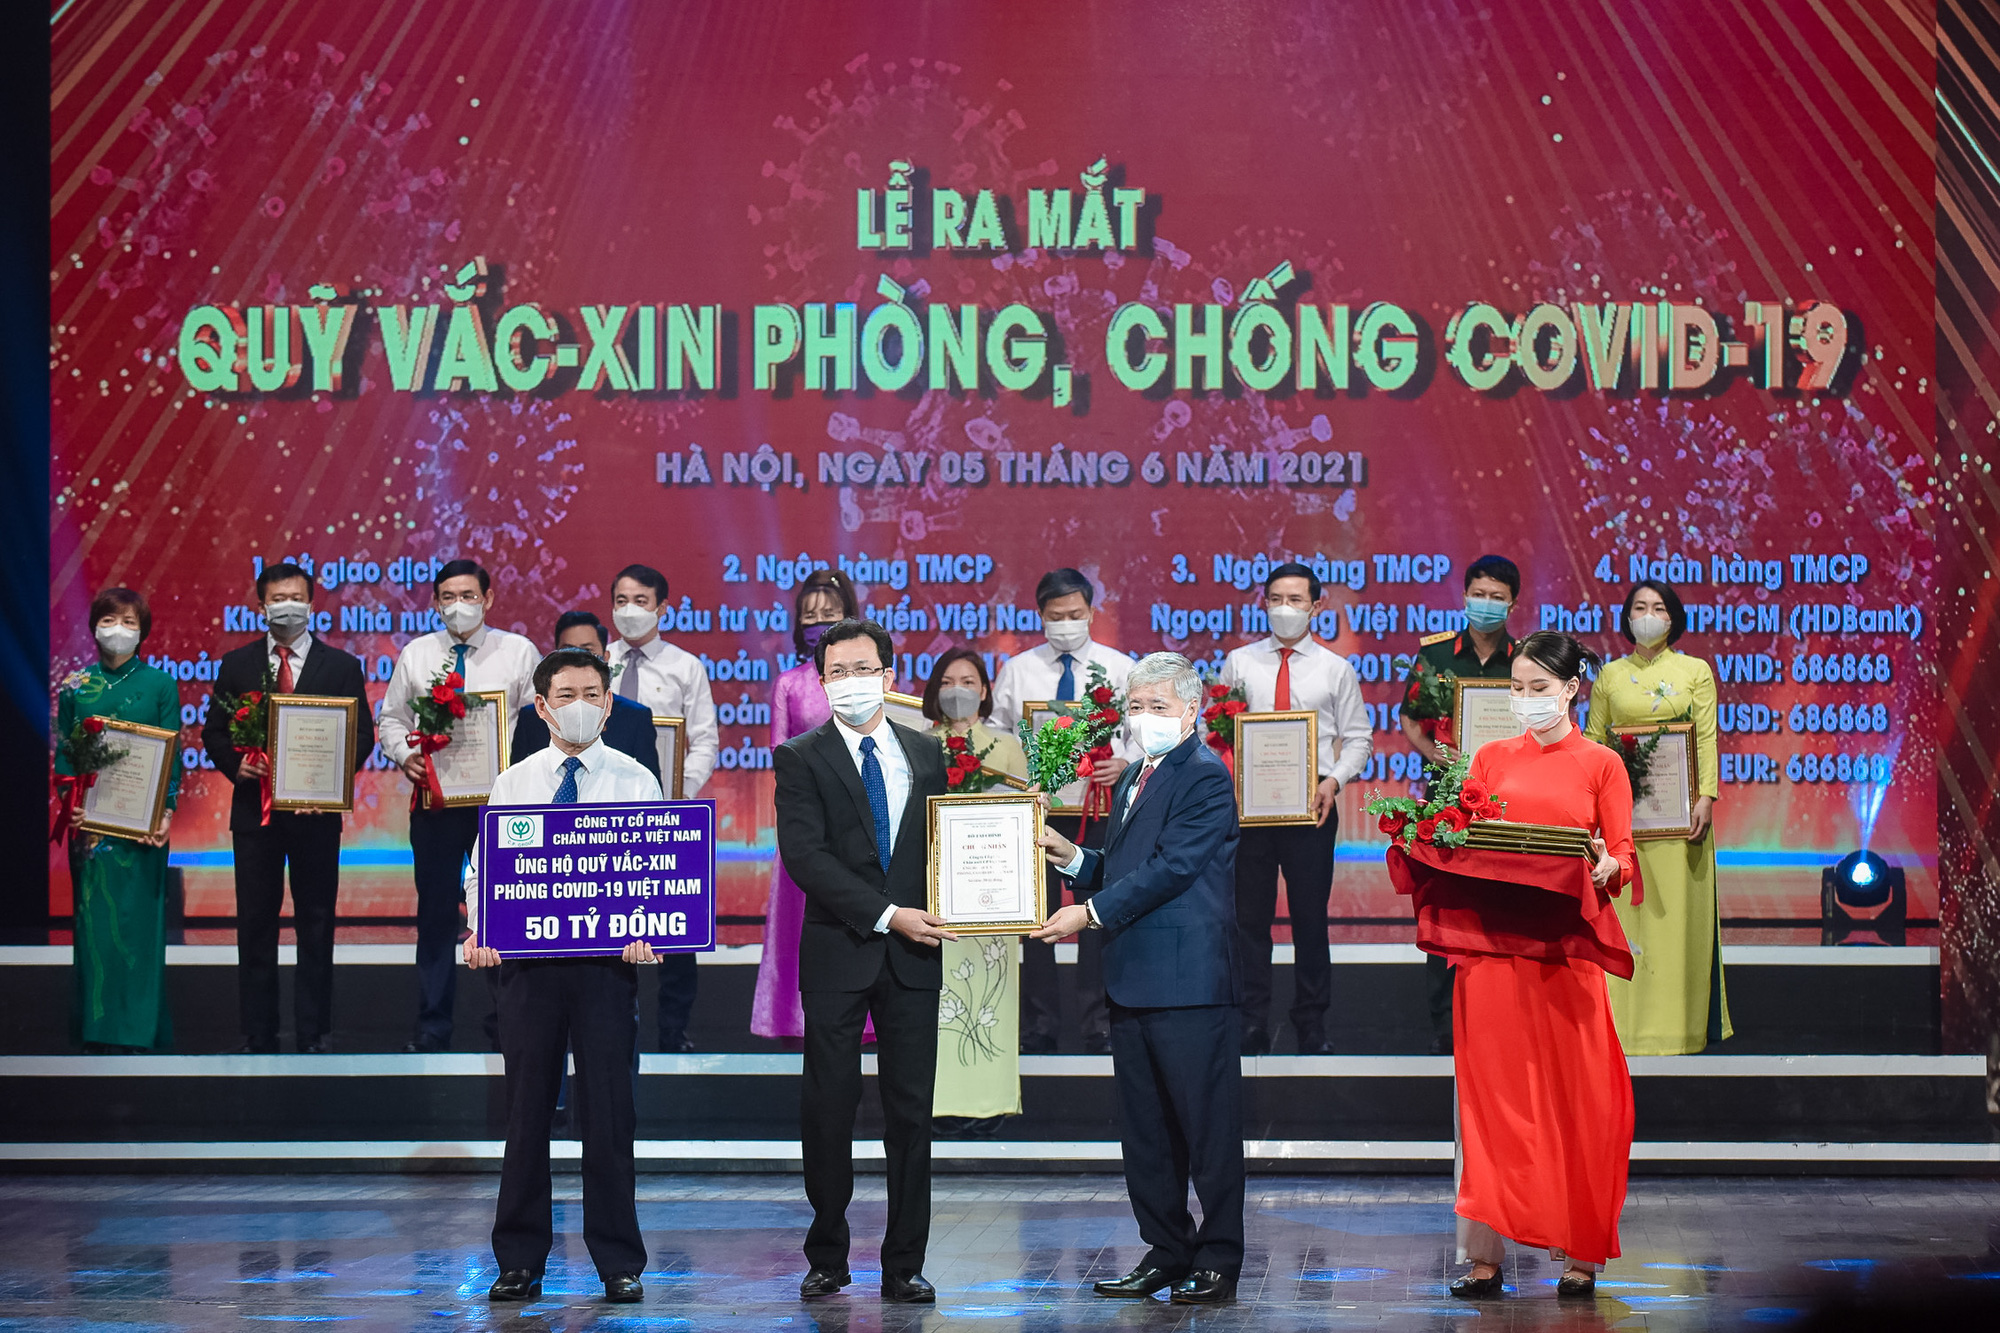 C.P Việt Nam trao tặng 50 tỷ đồng tới Quỹ Vắc-xin phòng, chống Covid-19 - Ảnh 3.